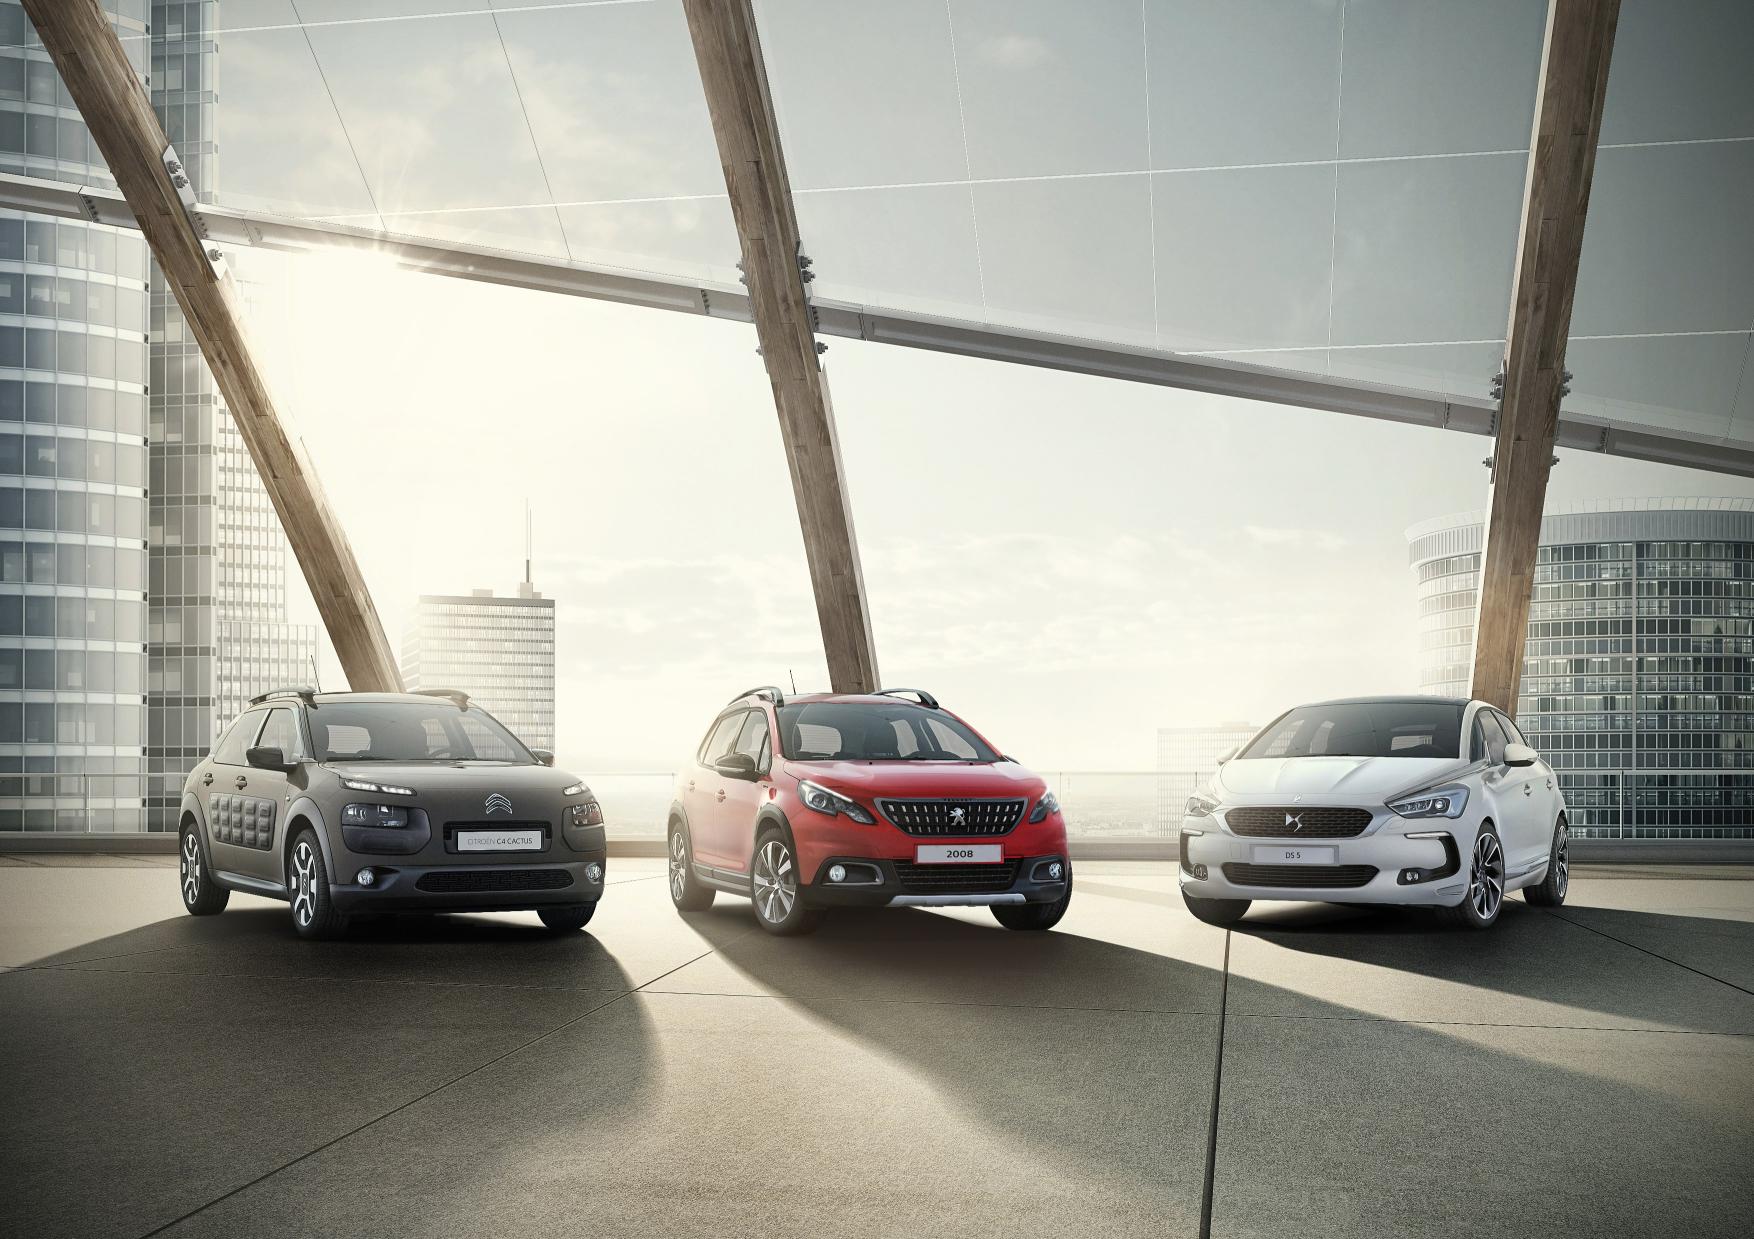 Psa Peugeot Citroen Becomes Groupe Psa, Plans Global Campaign With 26-Car Range - Autoevolution